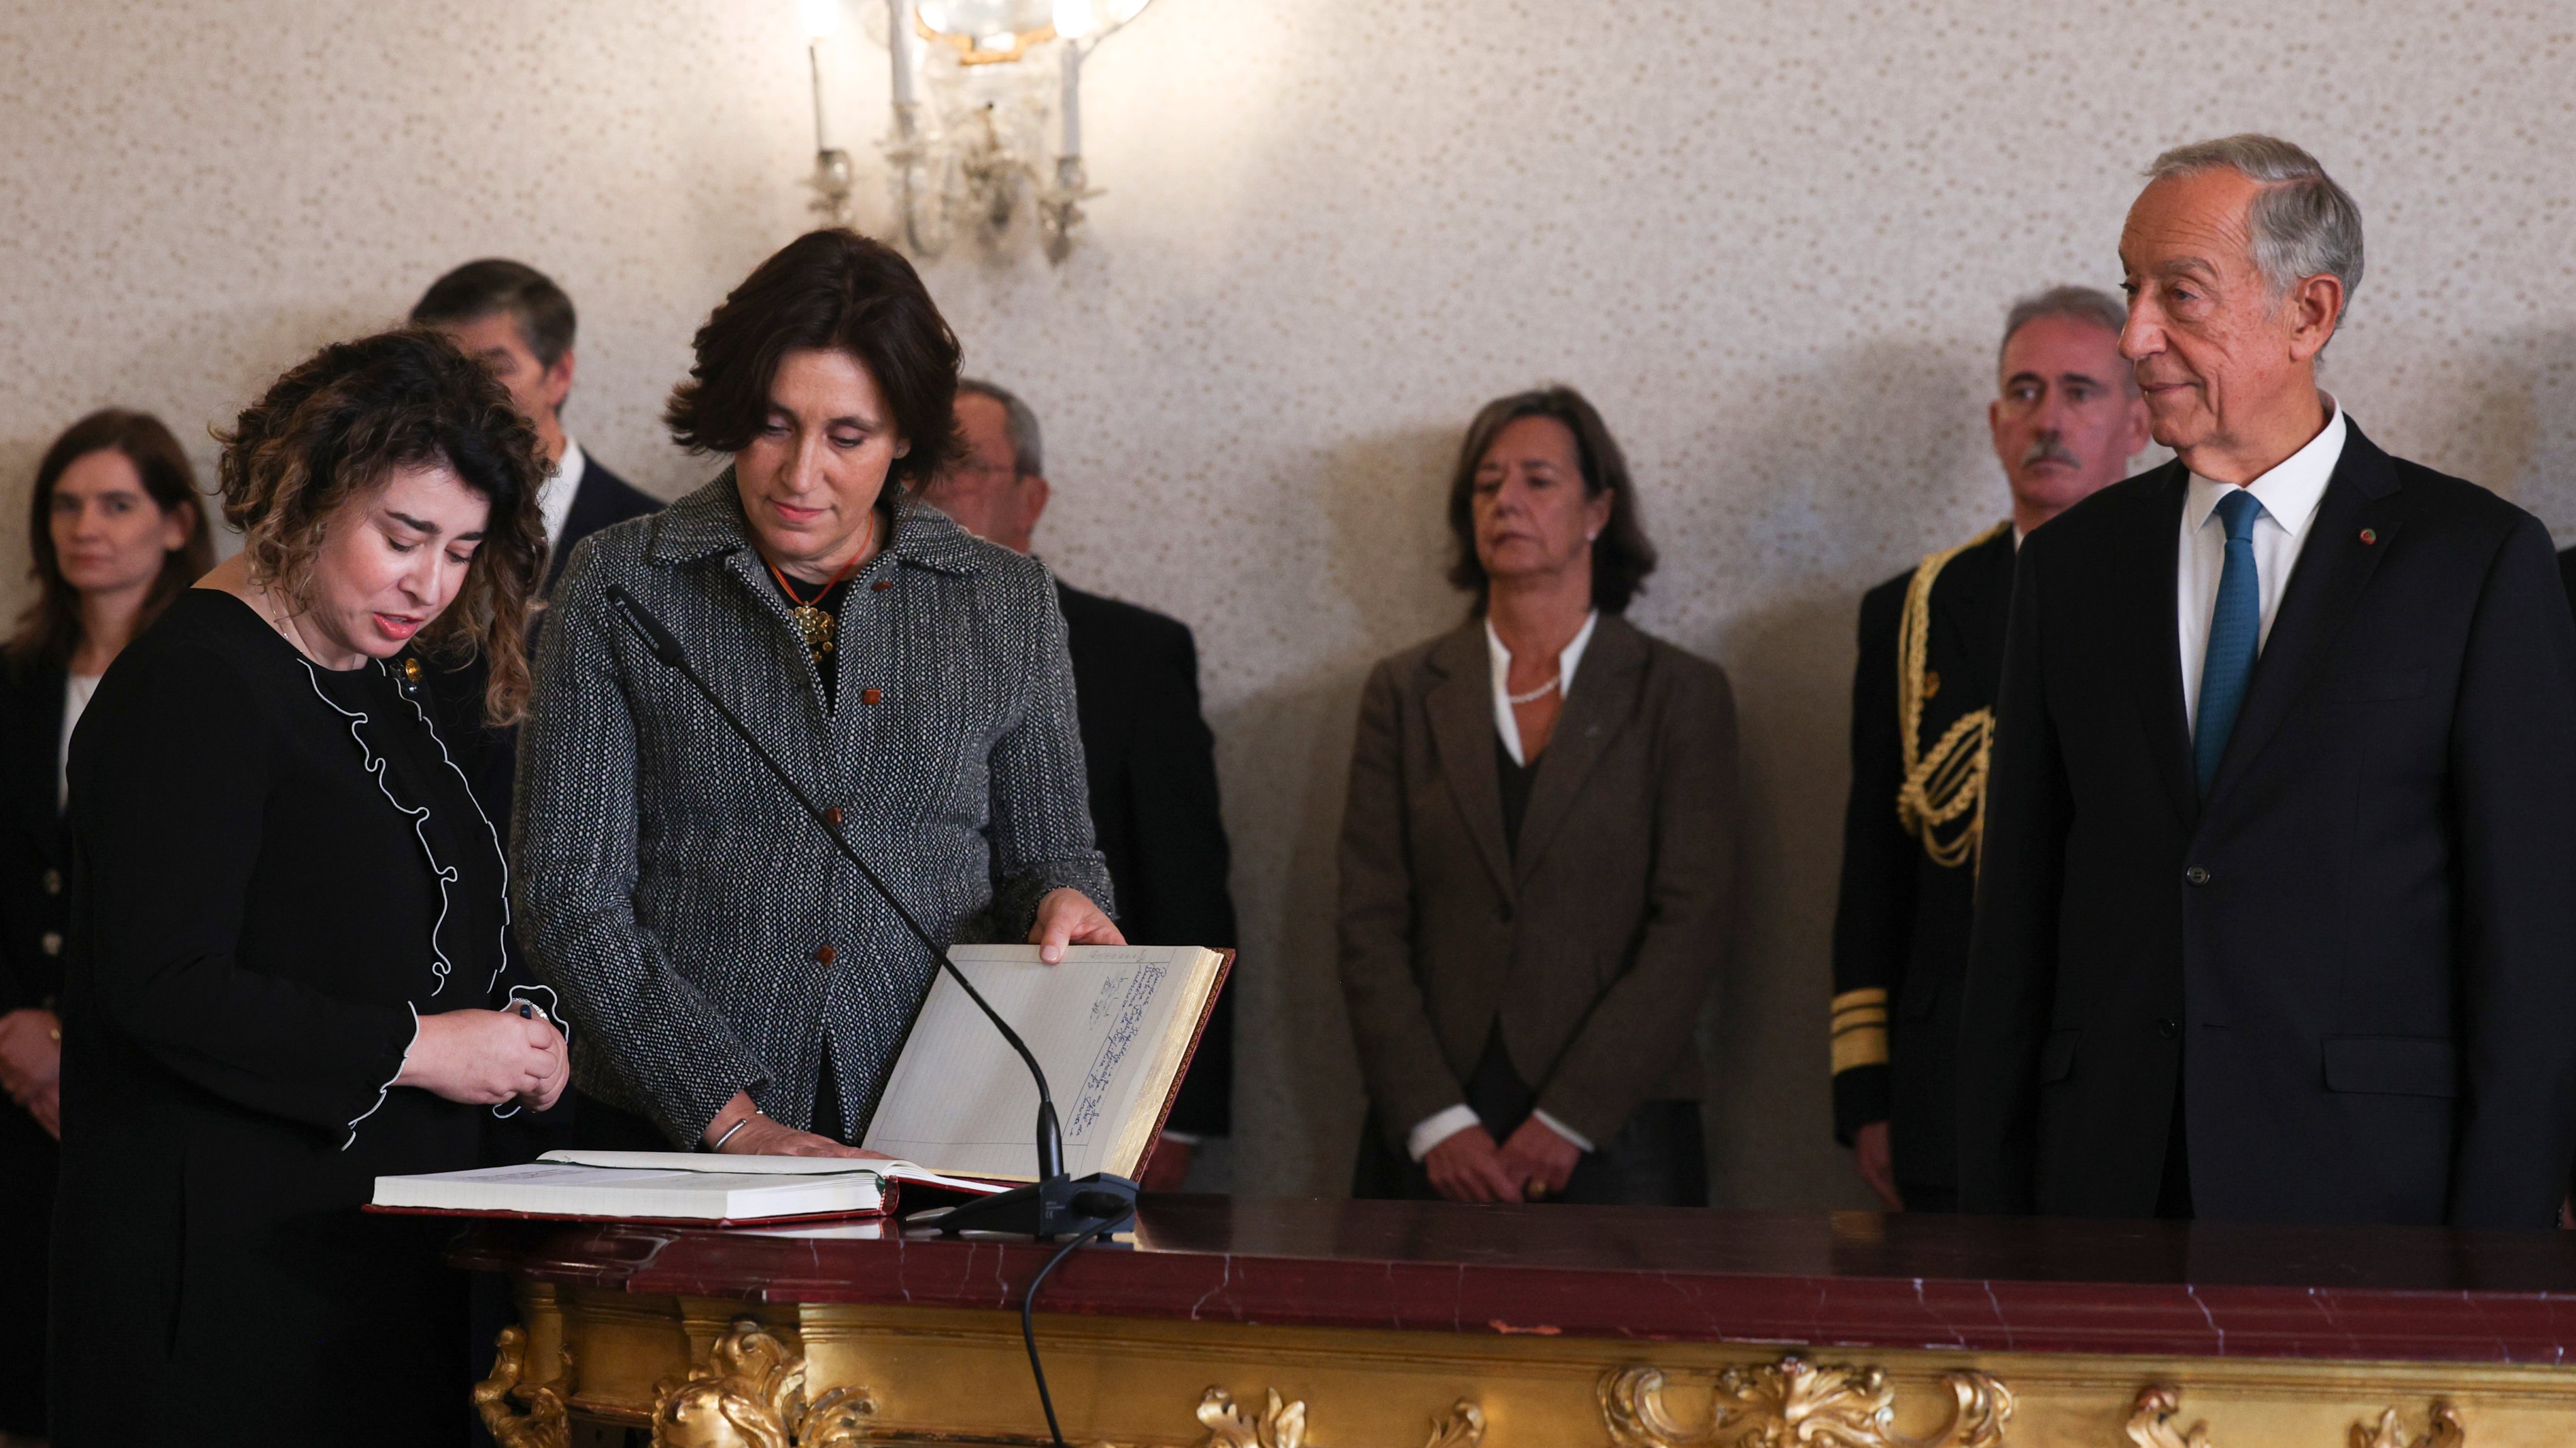 Alexandra Reis apresentou a demissão do cargo de secretária de Estado do Tesouro a 27 de dezembro